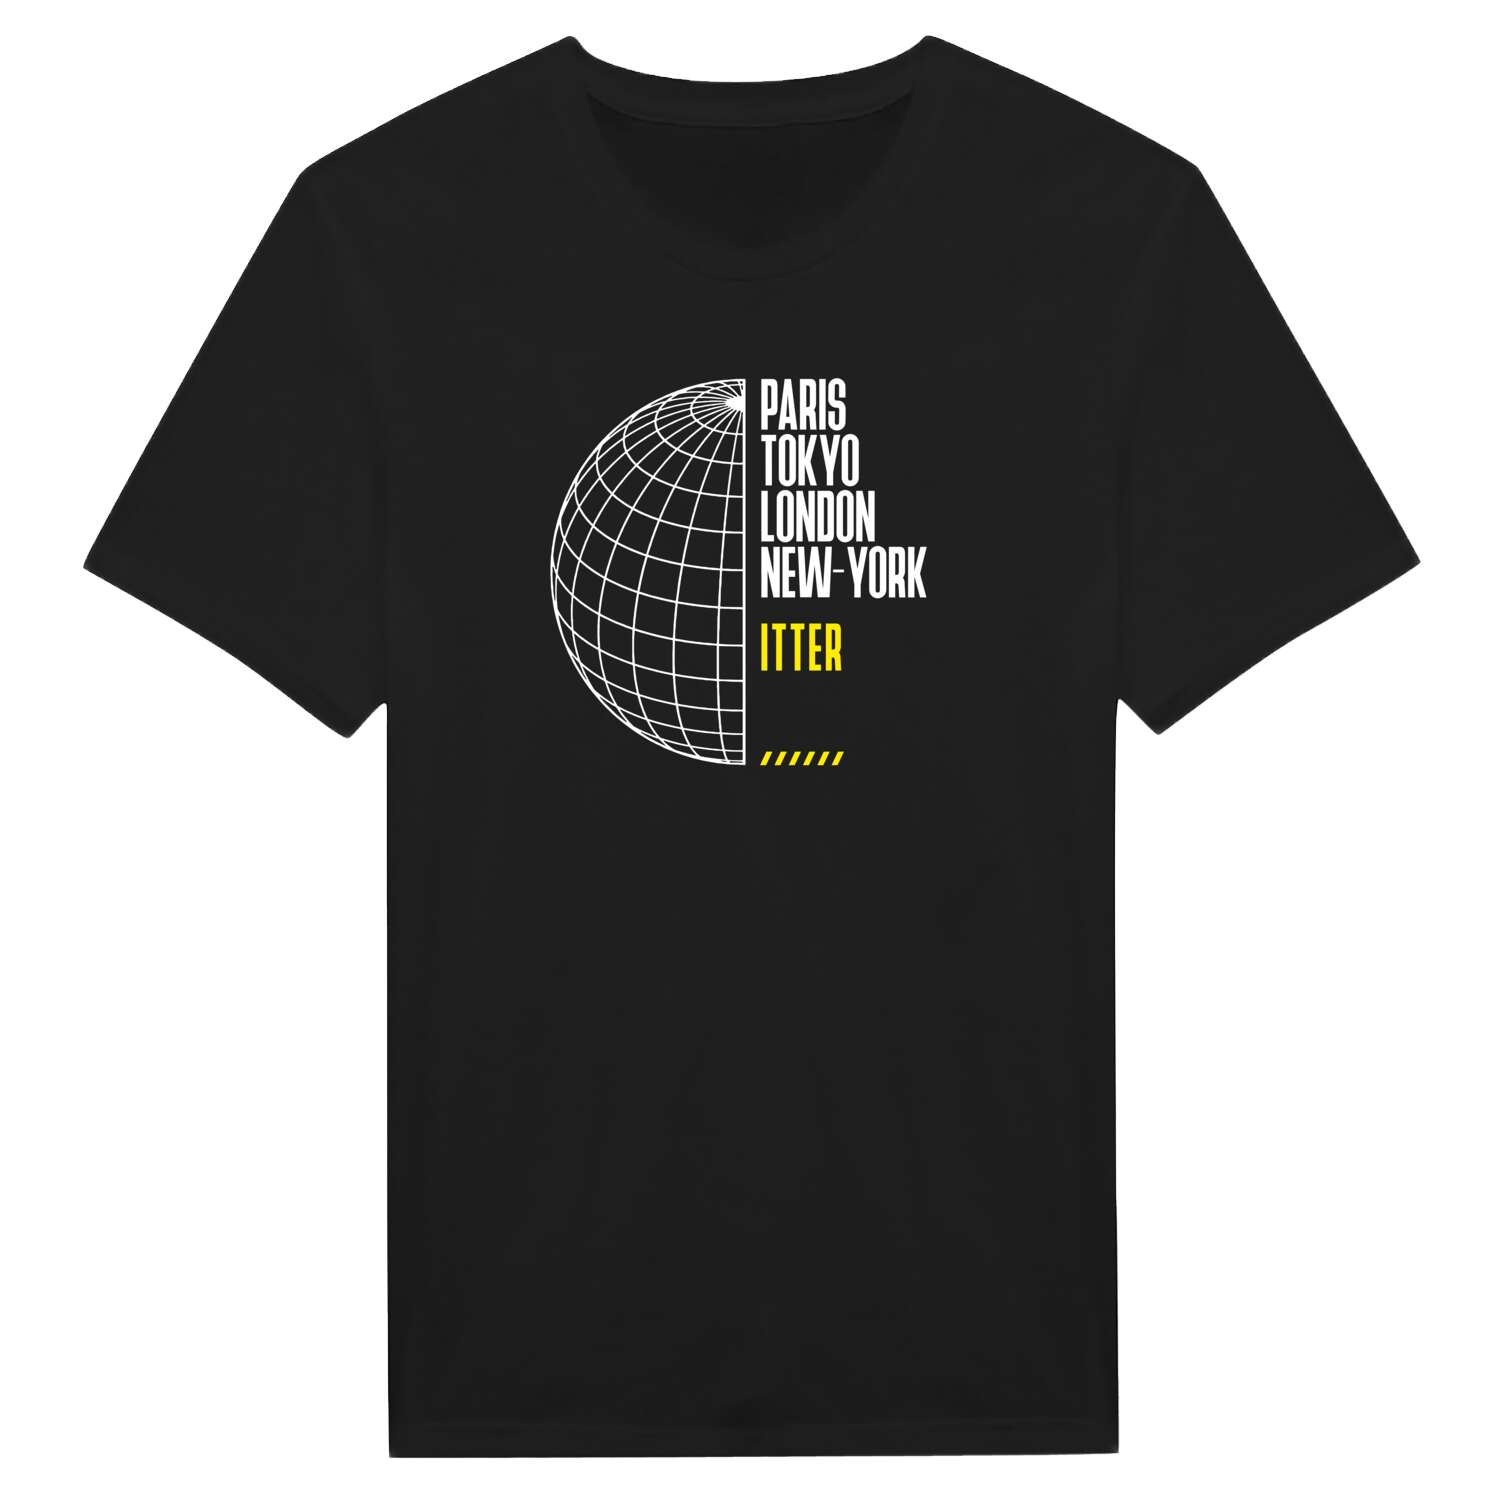 Itter T-Shirt »Paris Tokyo London«